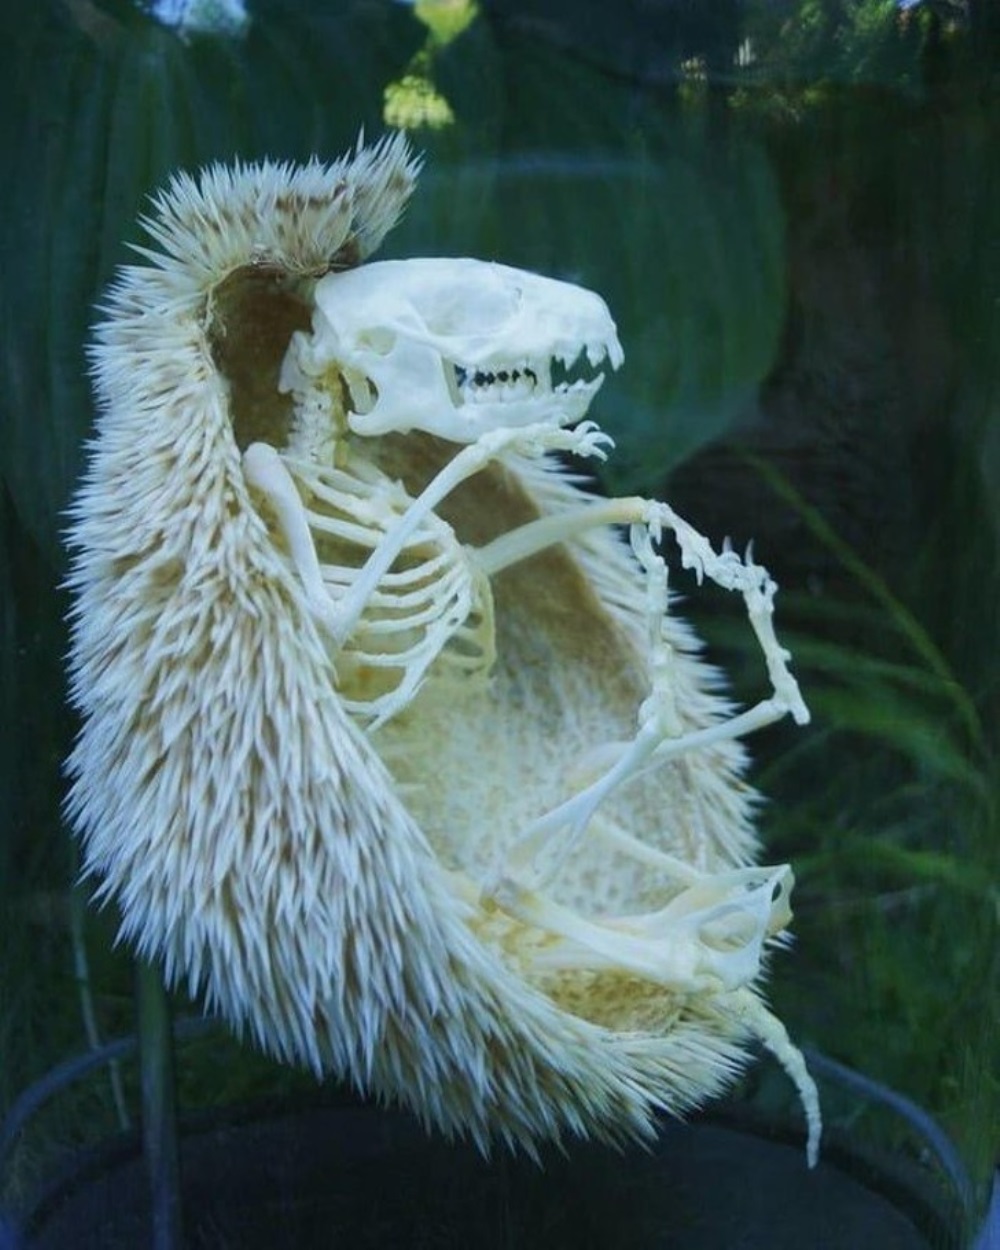 Este es el esqueleto de un erizo, en caso de que nunca hayas visto uno antes